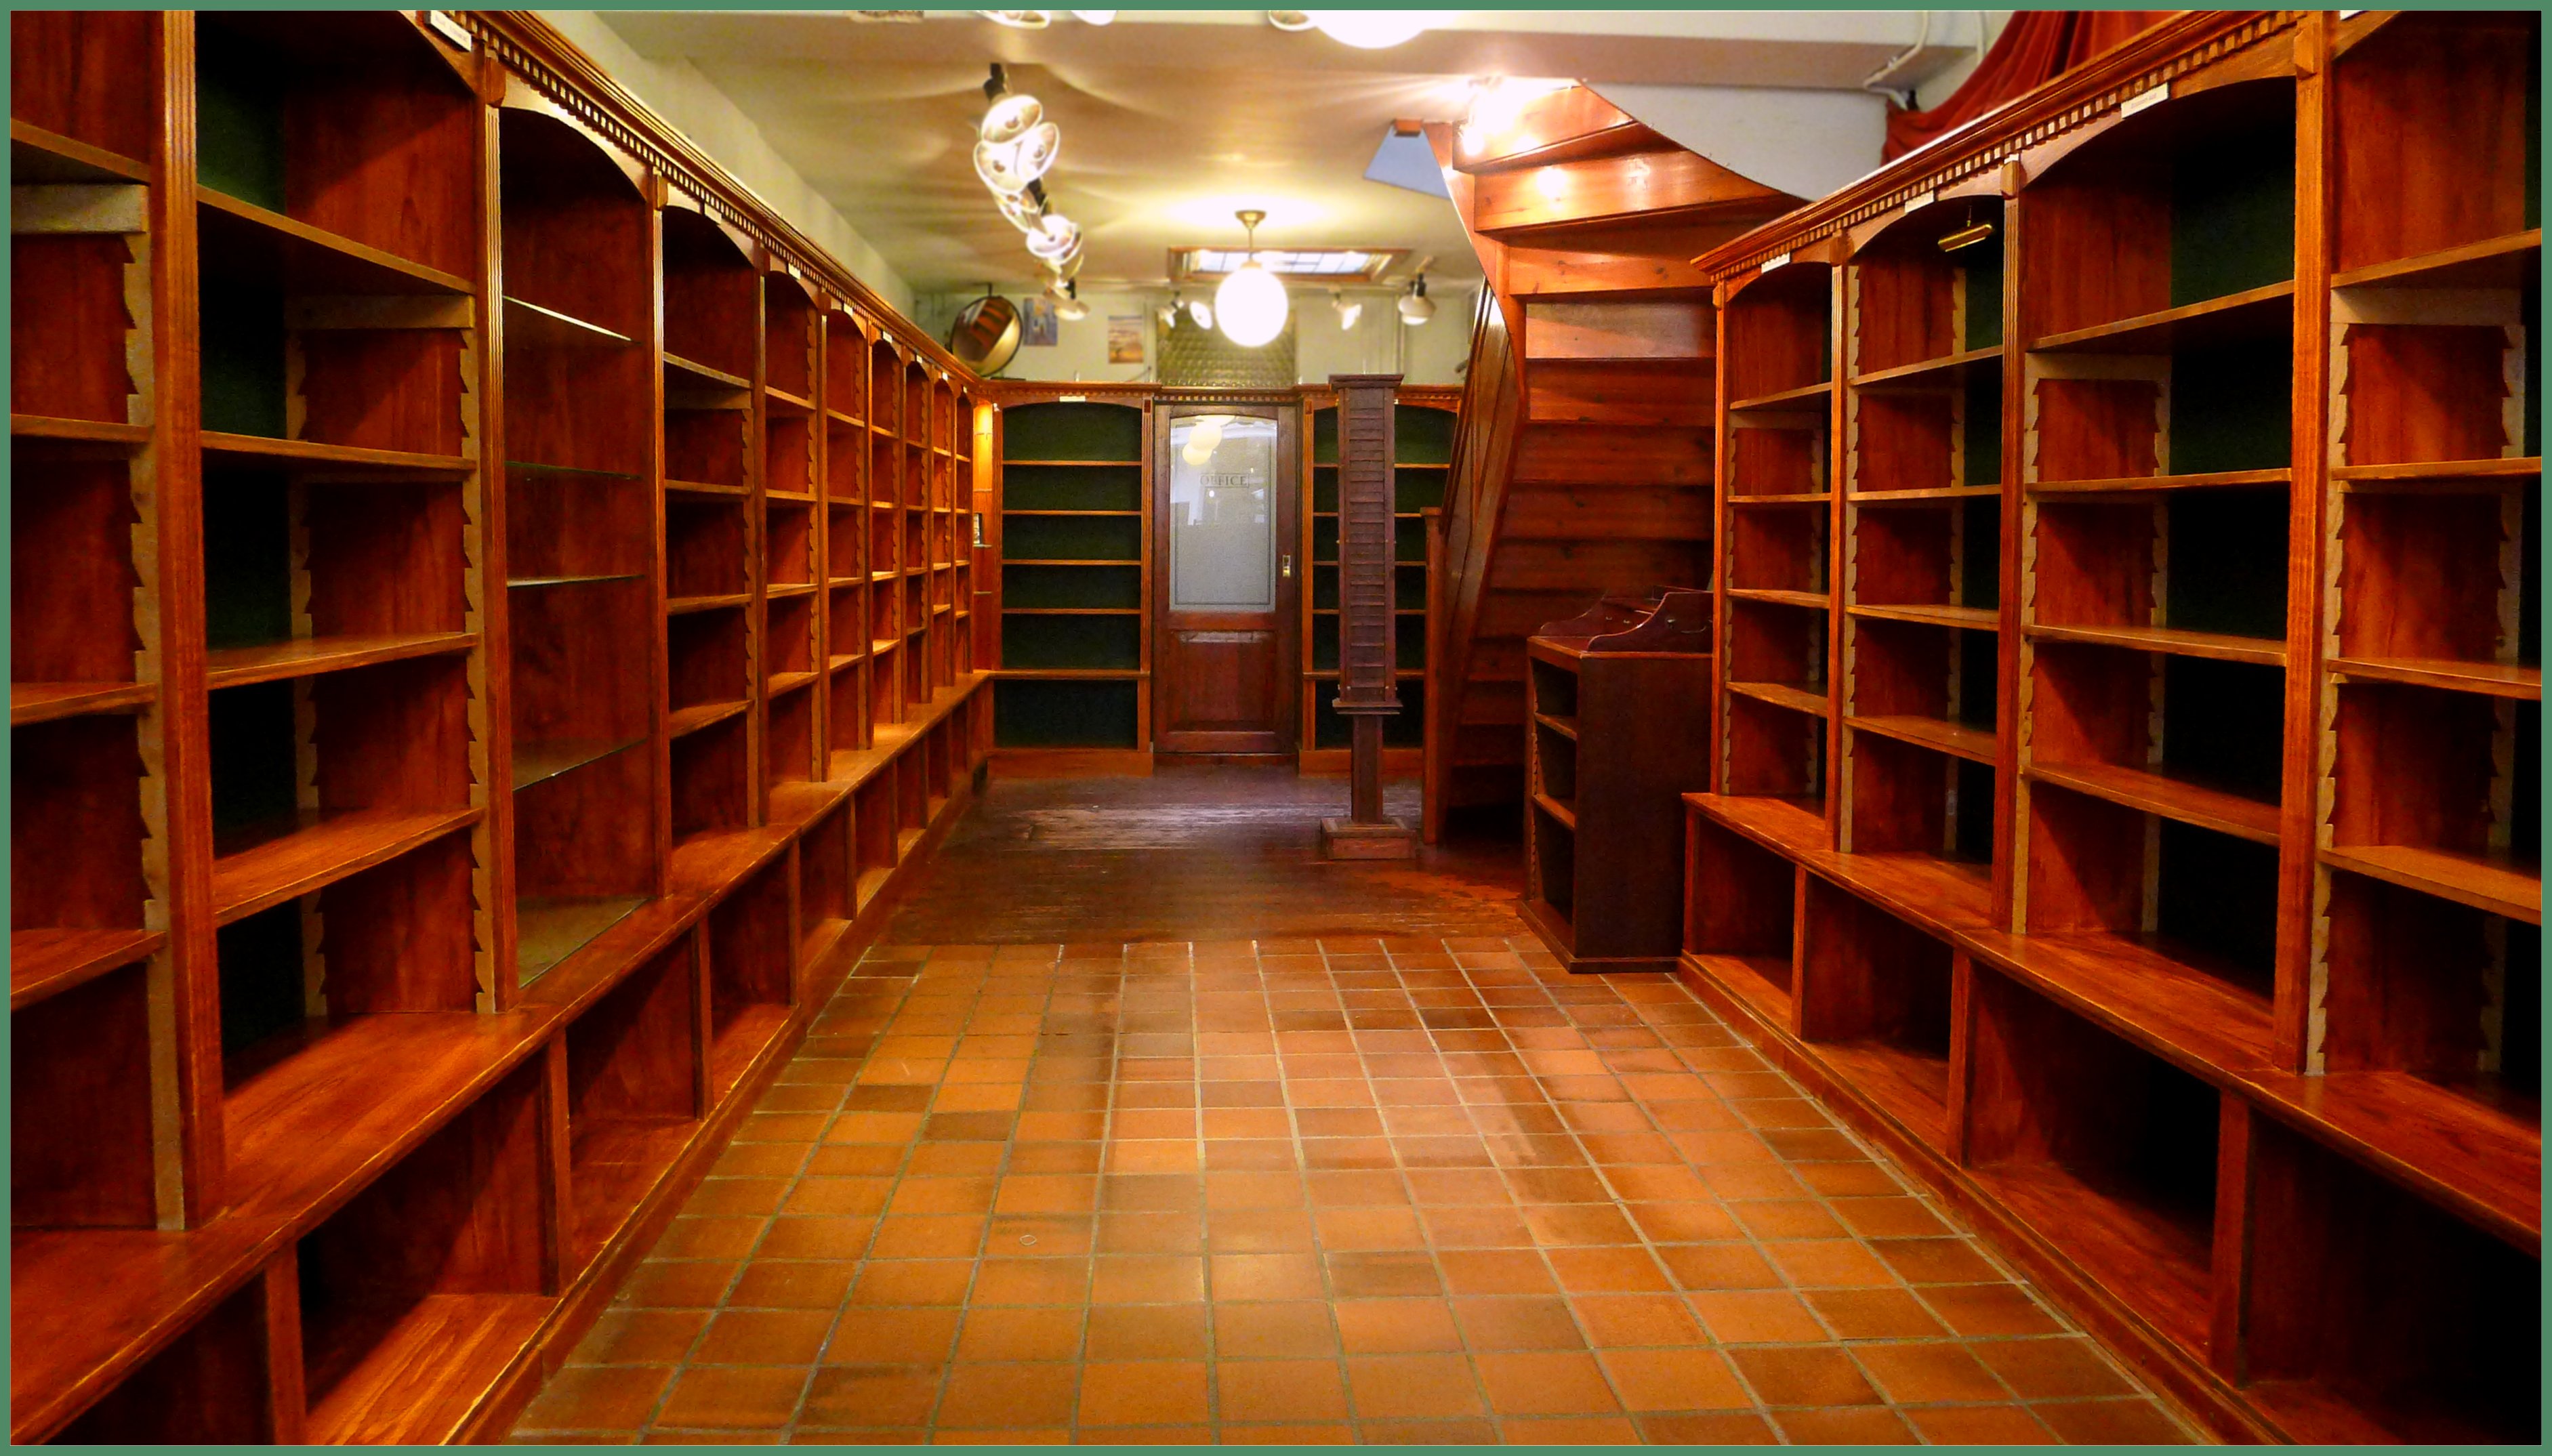 Geef rechten Kruipen Verniel Stanley&Livingstone on Twitter: "Boekenkasten te koop Stanley Livingstone  https://t.co/UdDSUeS34p via @YouTube Reisboekhandel is verhuisd naar de  Herengracht 60 in Den Haag. NU komt het interieur van onze oude winkel te  koop. Wie